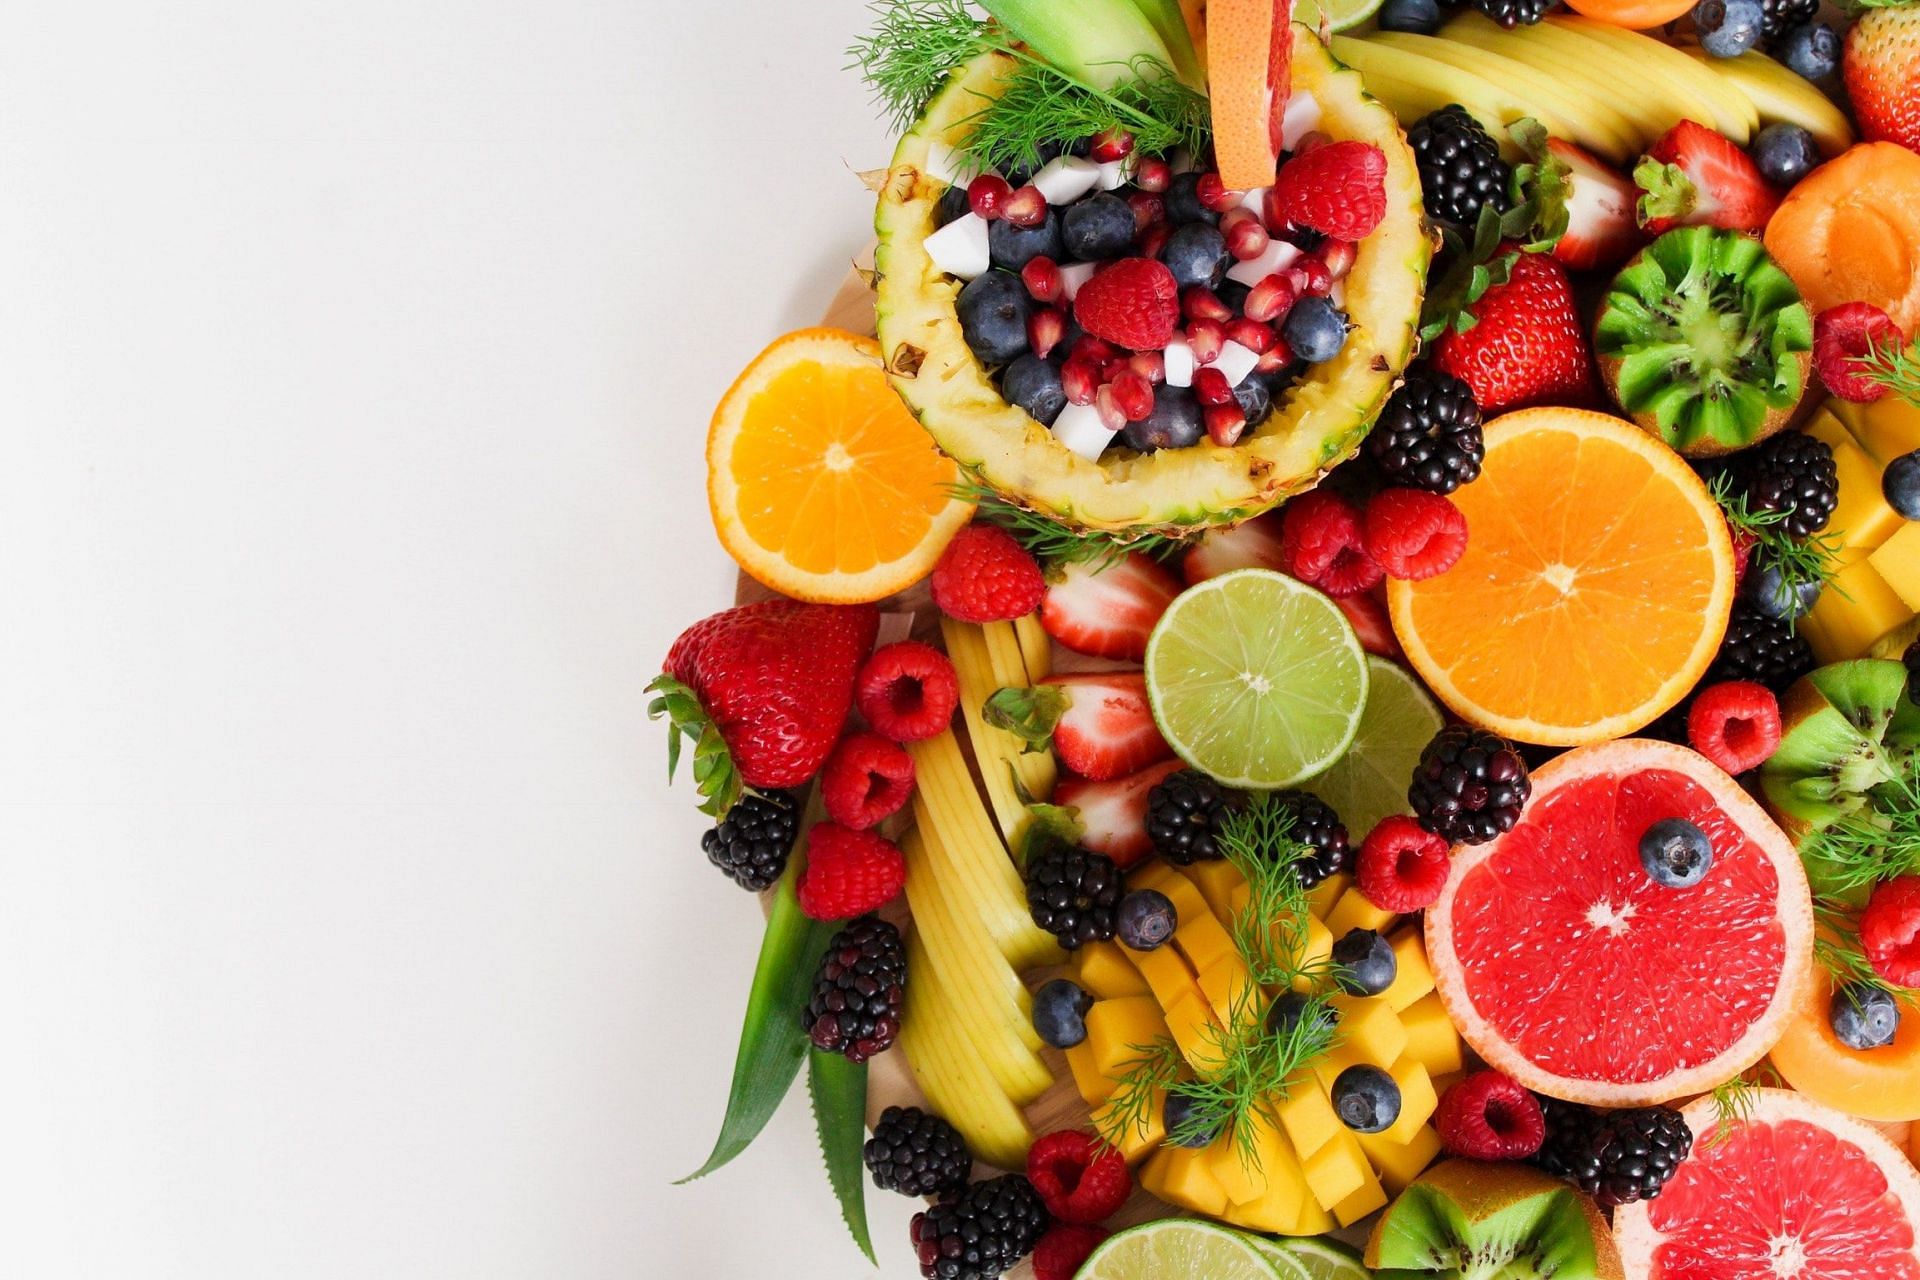 Fruit serving for meal plan (Image via Pexels/Jane Doan)